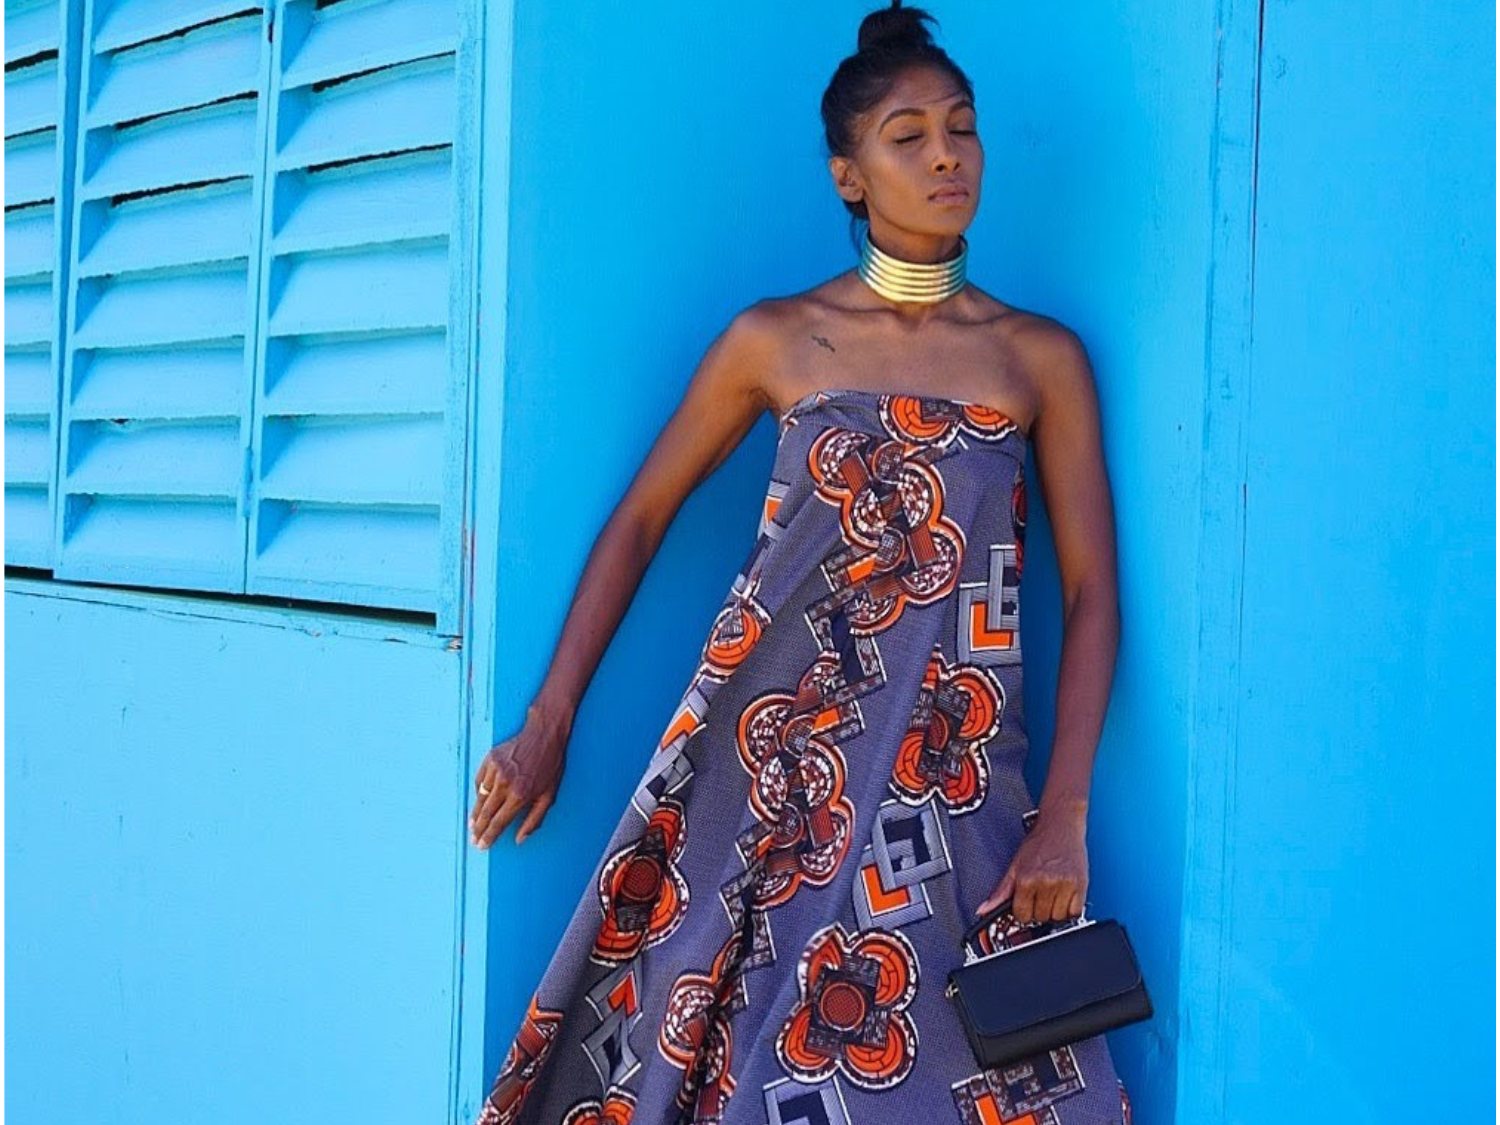 Diseñadores de moda caribeños expondrán en la Feria Moda de Otoño del Reino Unido